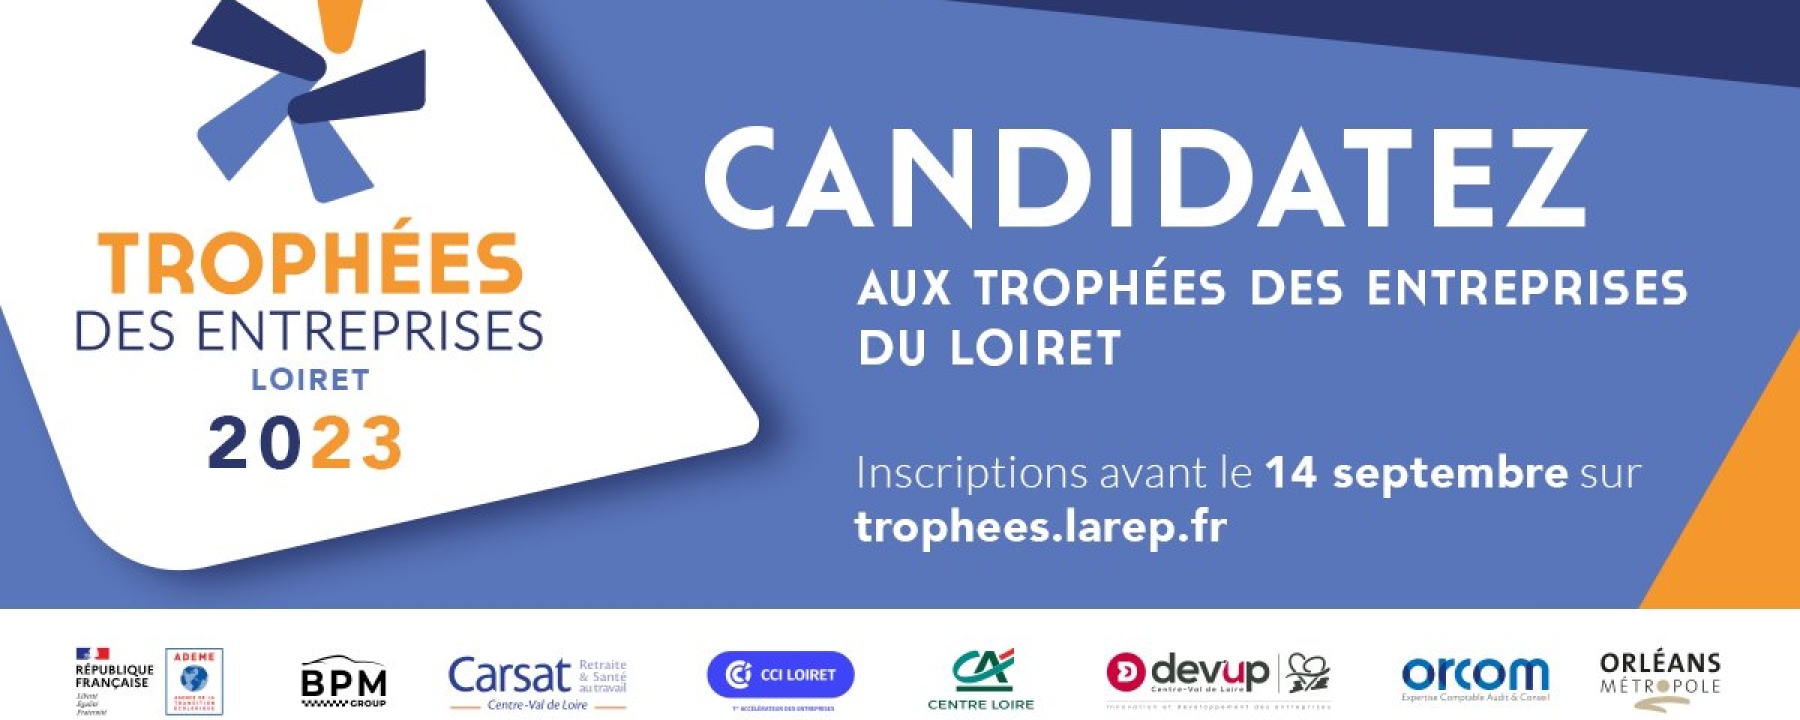 Trophées des Entreprises du Loiret 2023 - 14ème édition